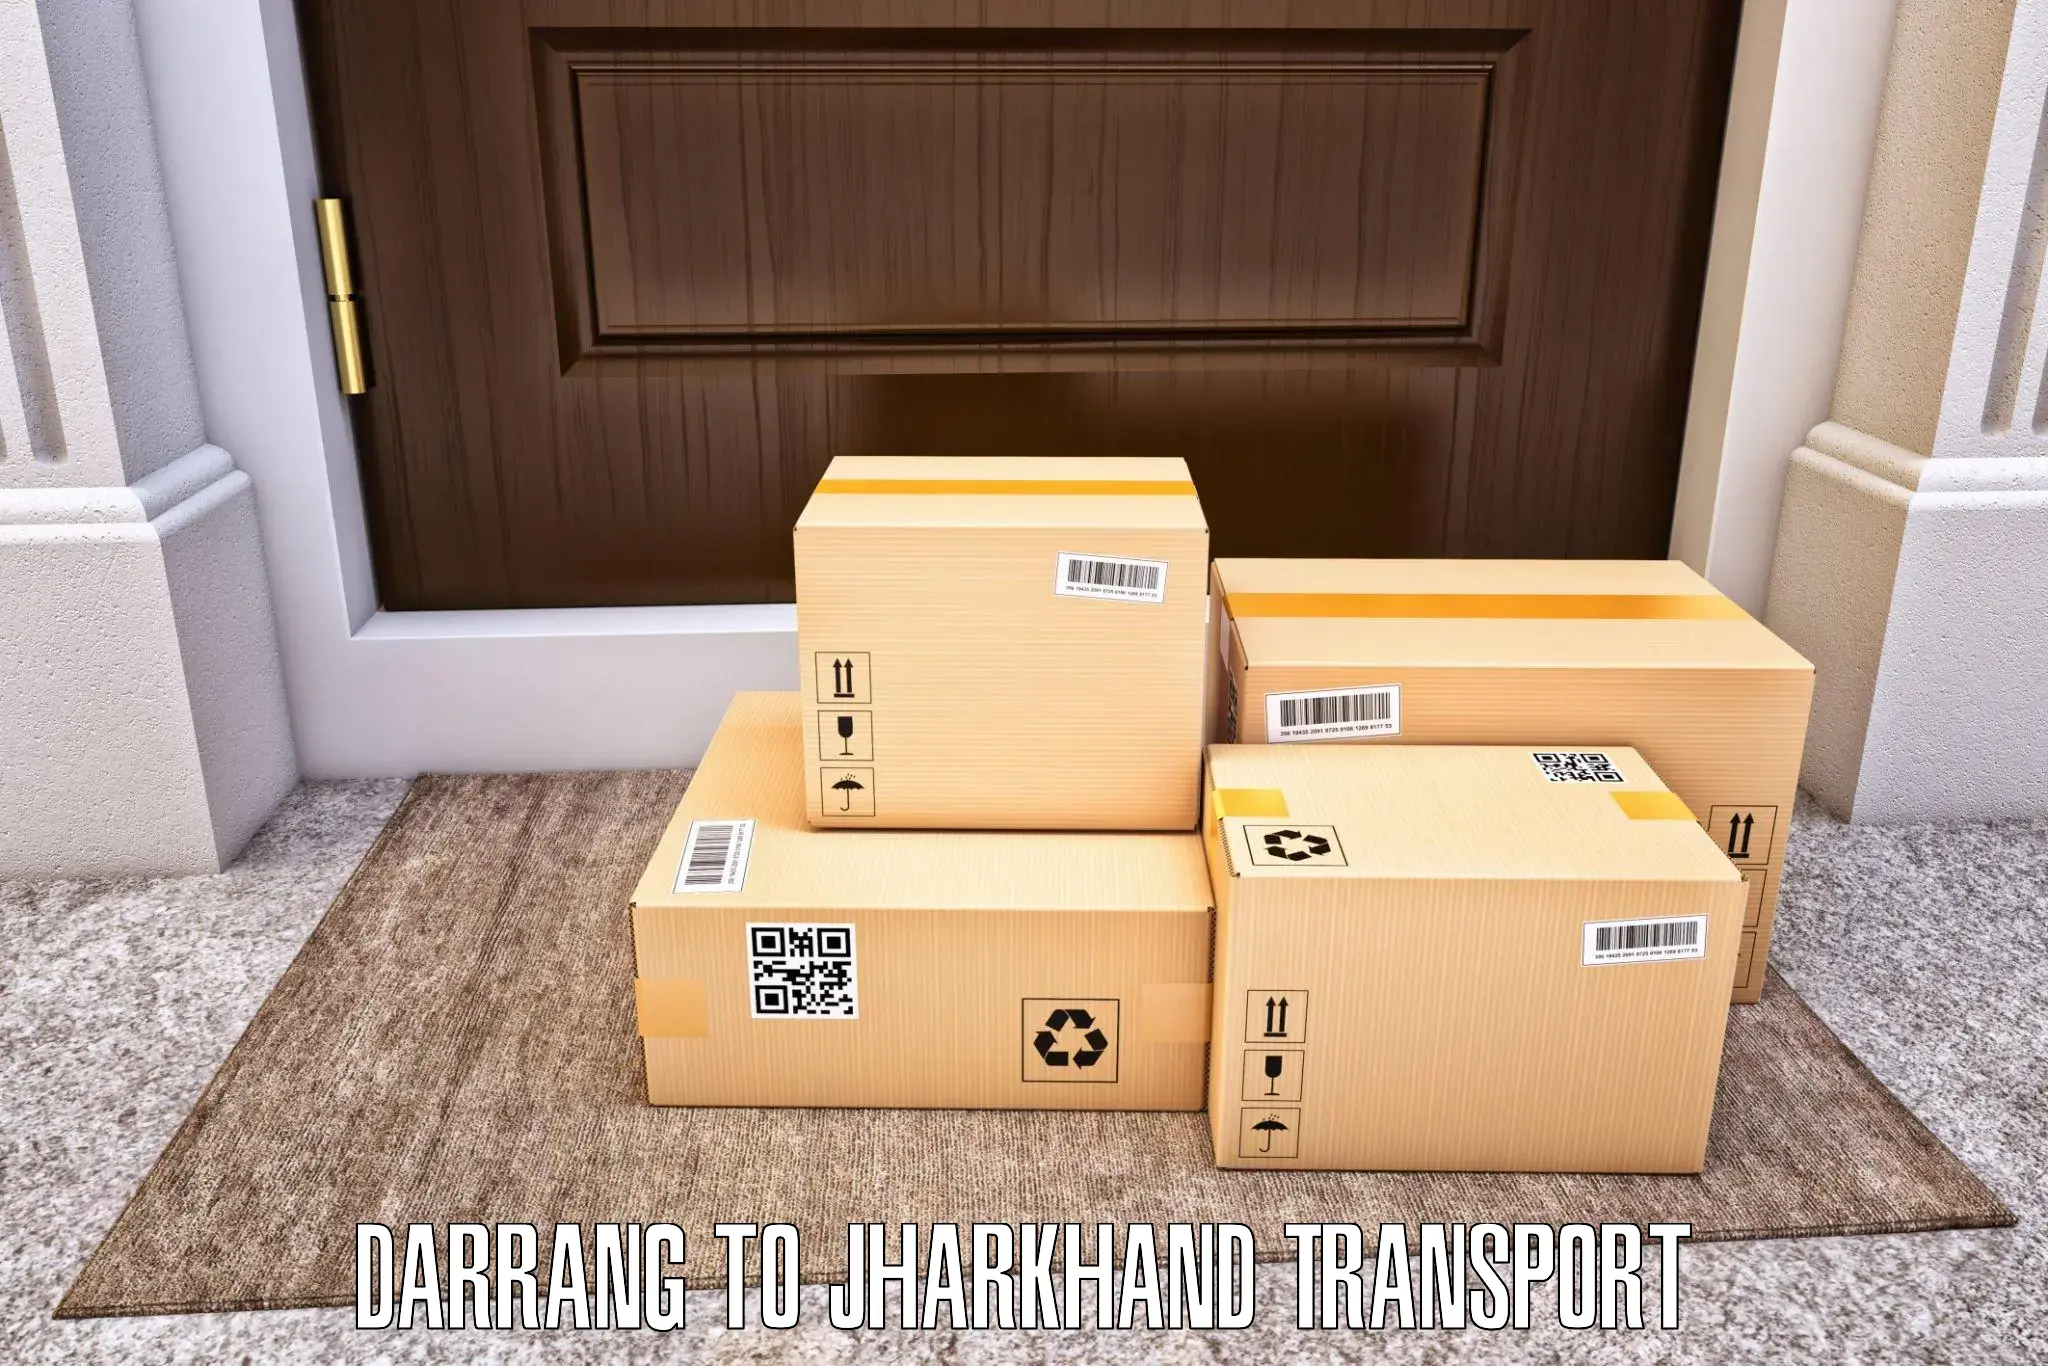 Transport in sharing Darrang to Dhalbhumgarh